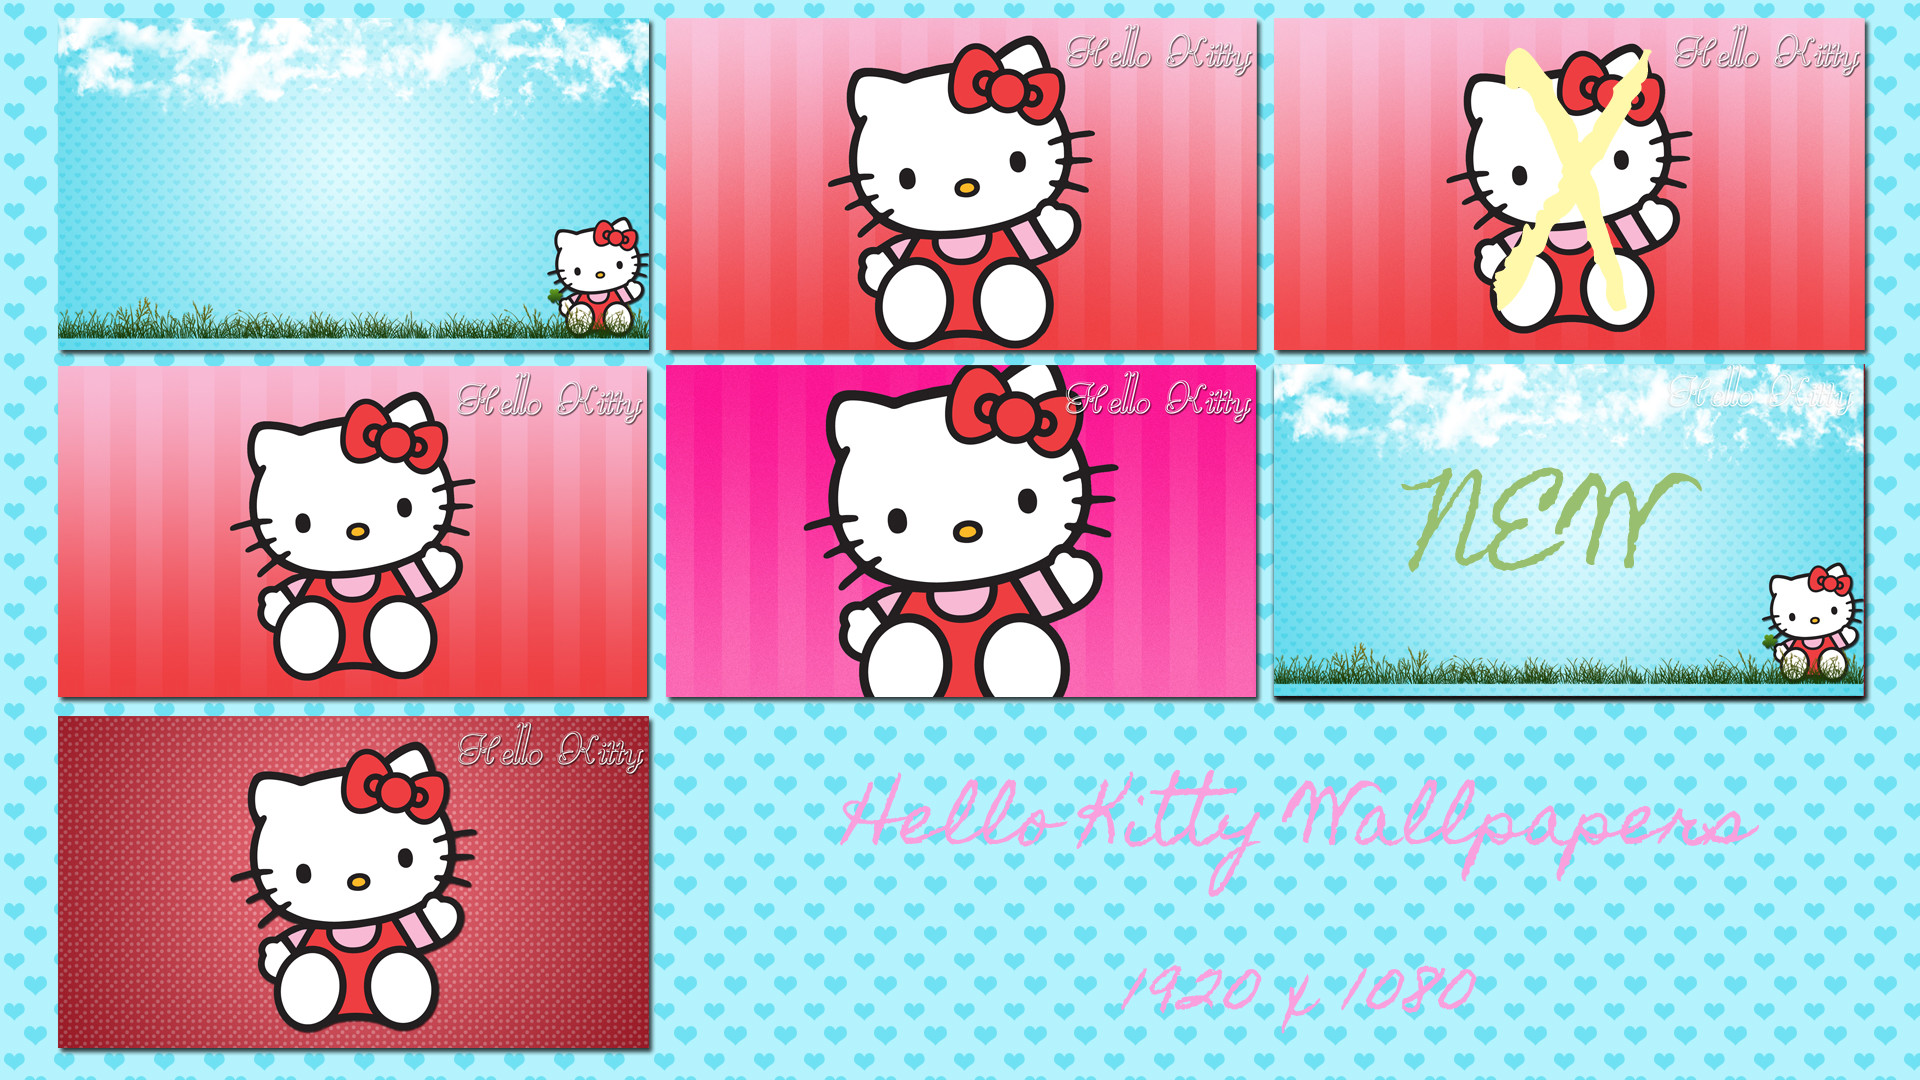 1920x1080 ... Cute Hello Kitty Desktop 6 Pack! - 1920 x 1080 by Sleepy-Stardust